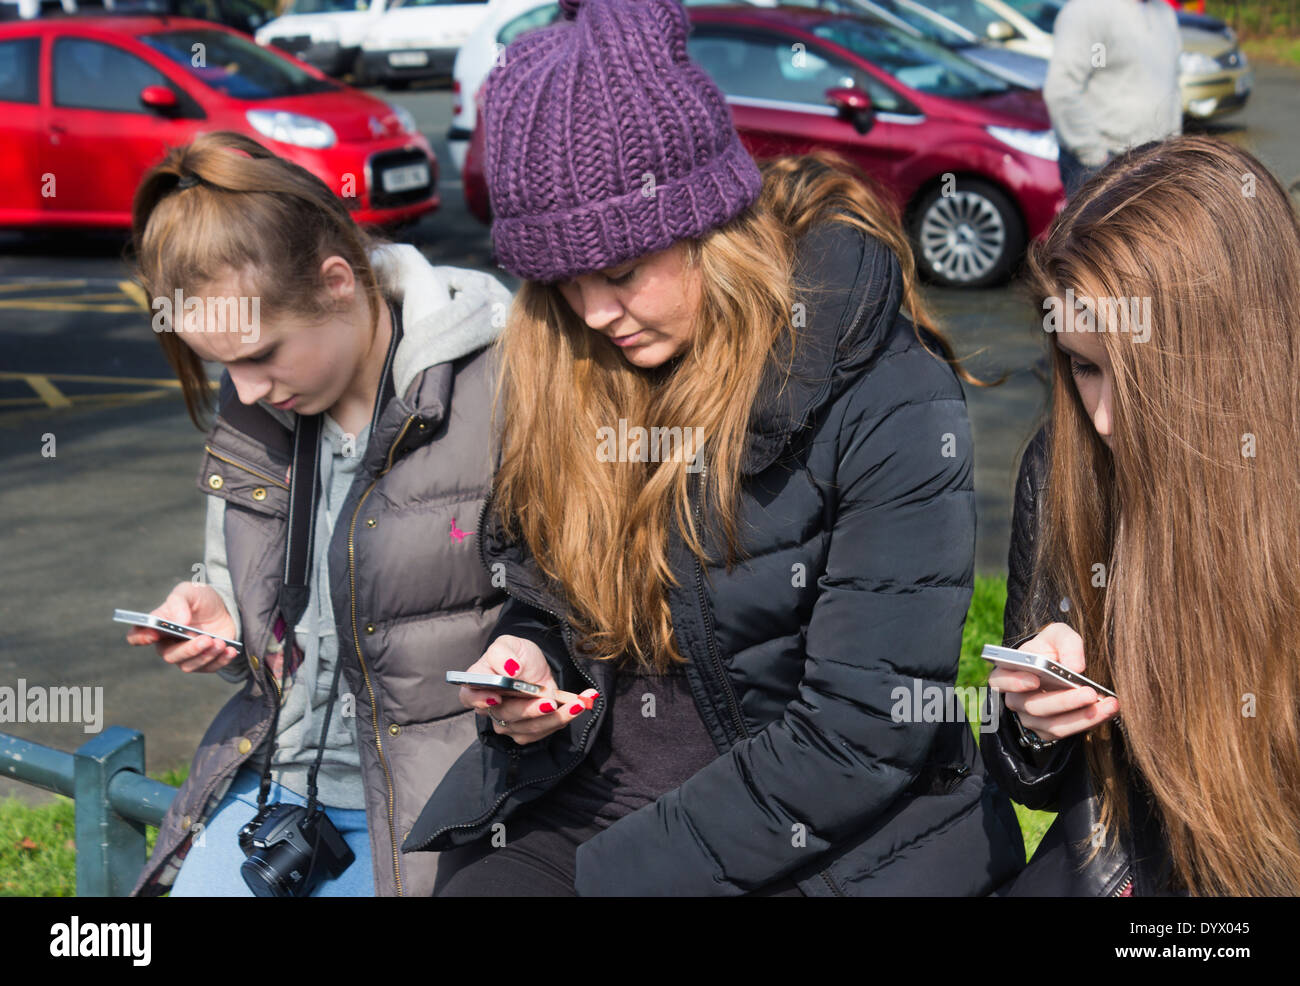 Trois jeunes filles à la recherche de téléphones mobiles. Banque D'Images